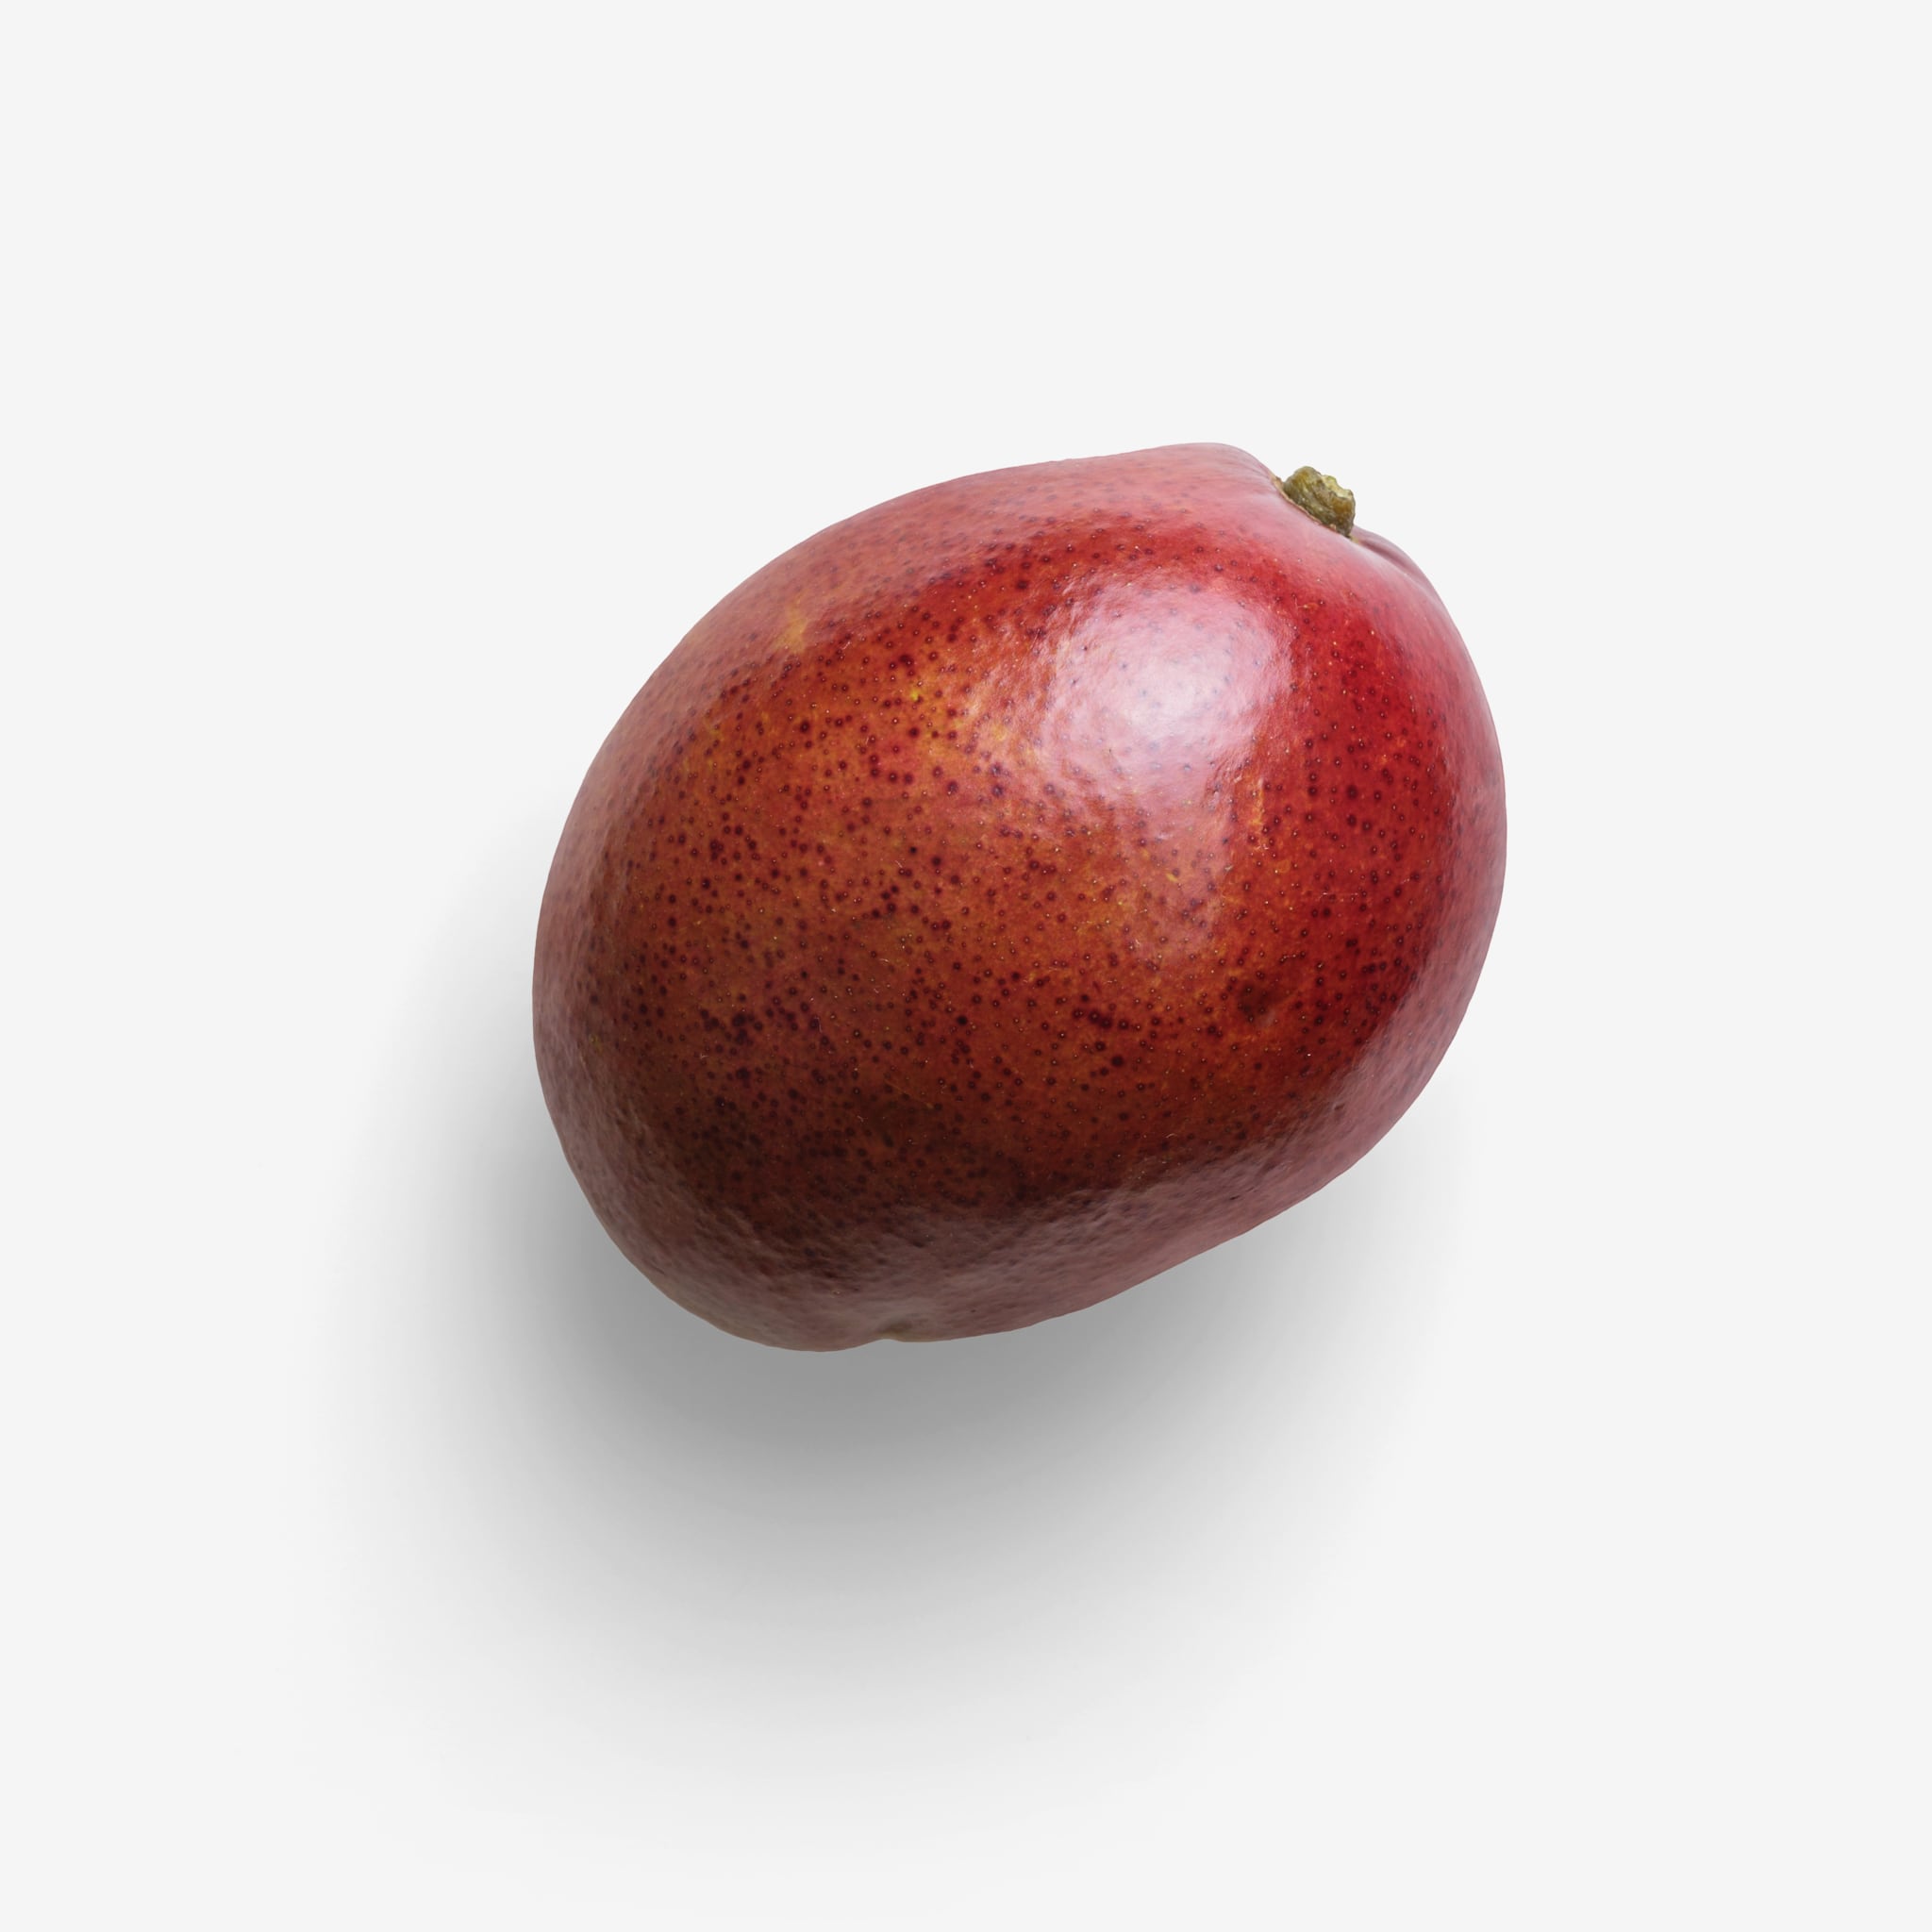 Mango image with transparent background